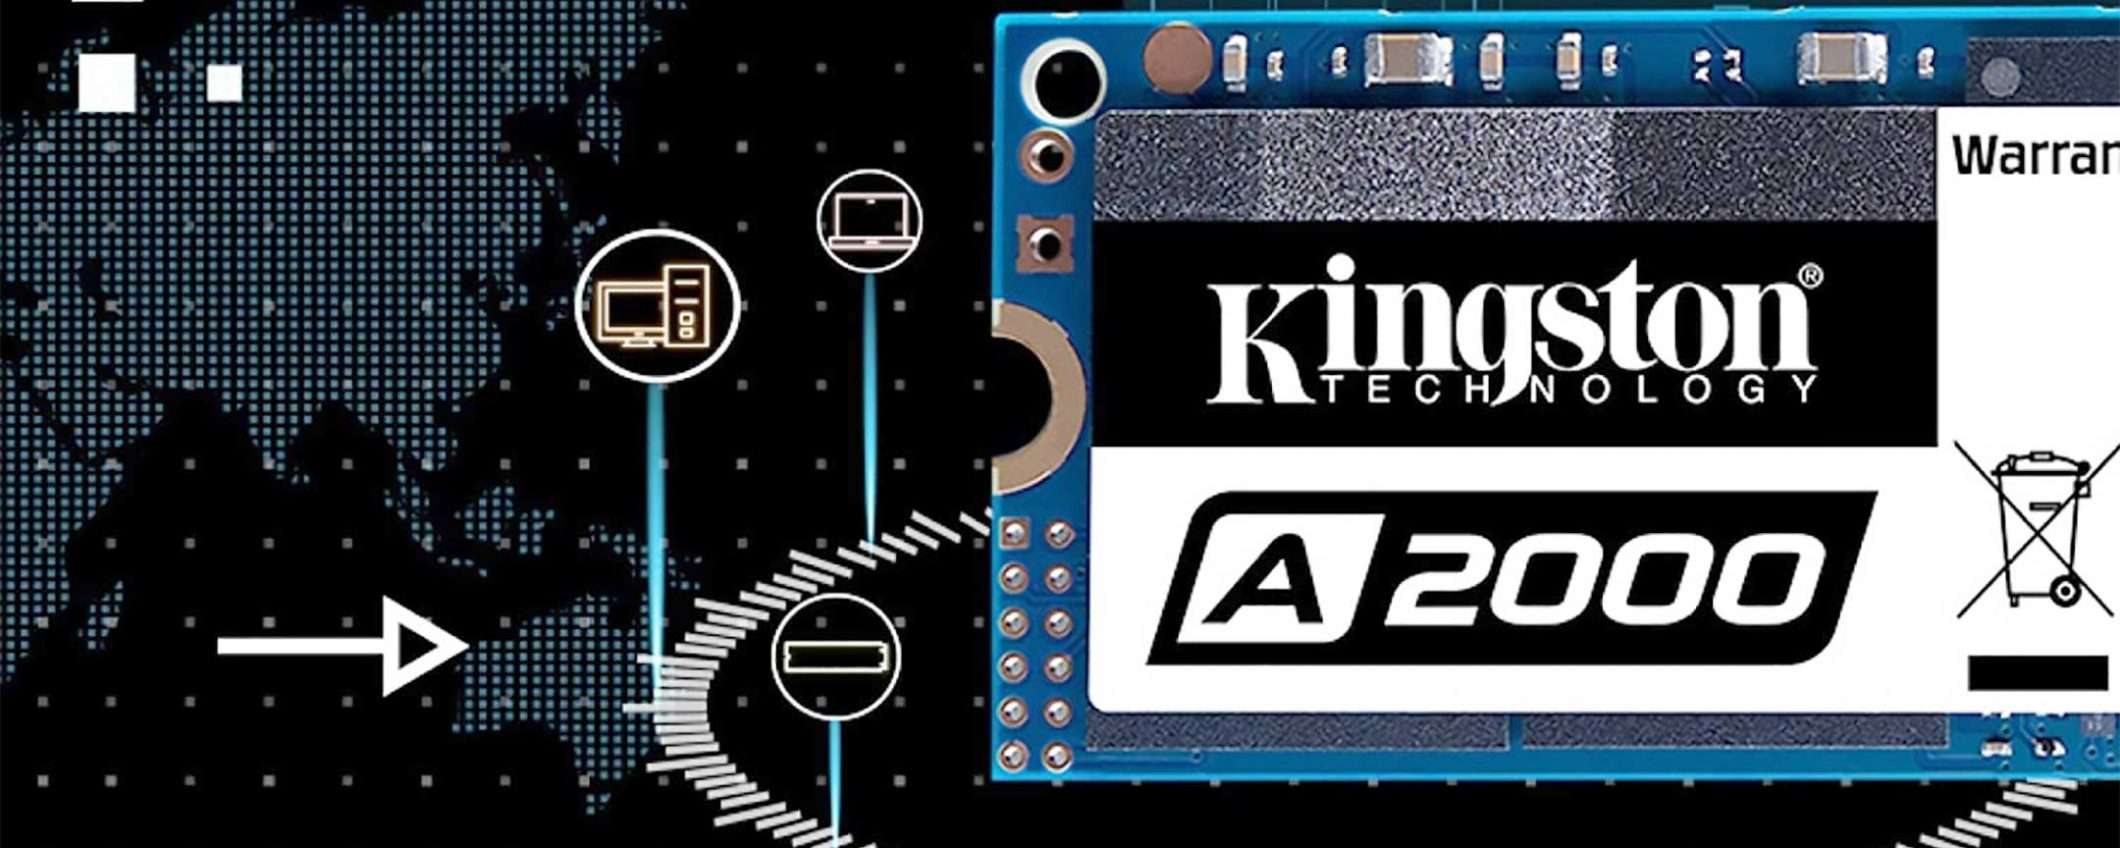 La SSD Kingston A2000 da 500 GB a -47% su Amazon